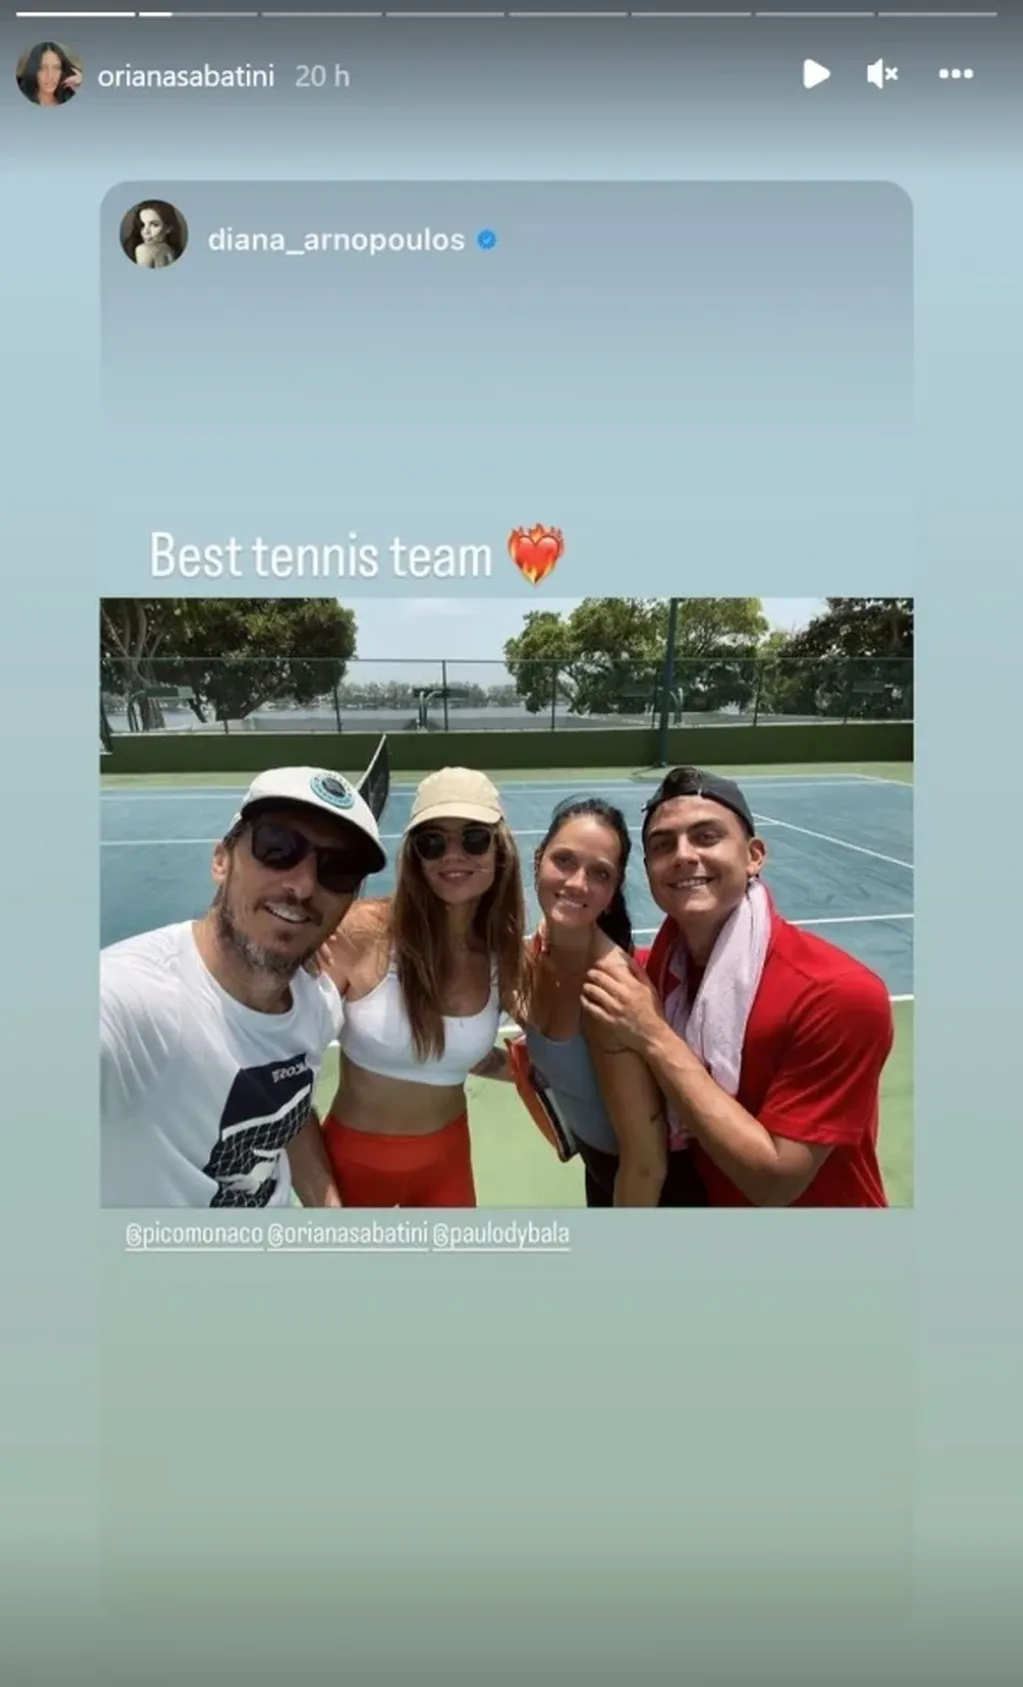 Diana Arnopoulos, Pico Monaco, Paulo Dybala y Oriana Sabatini jugaron al tenis en Miami.